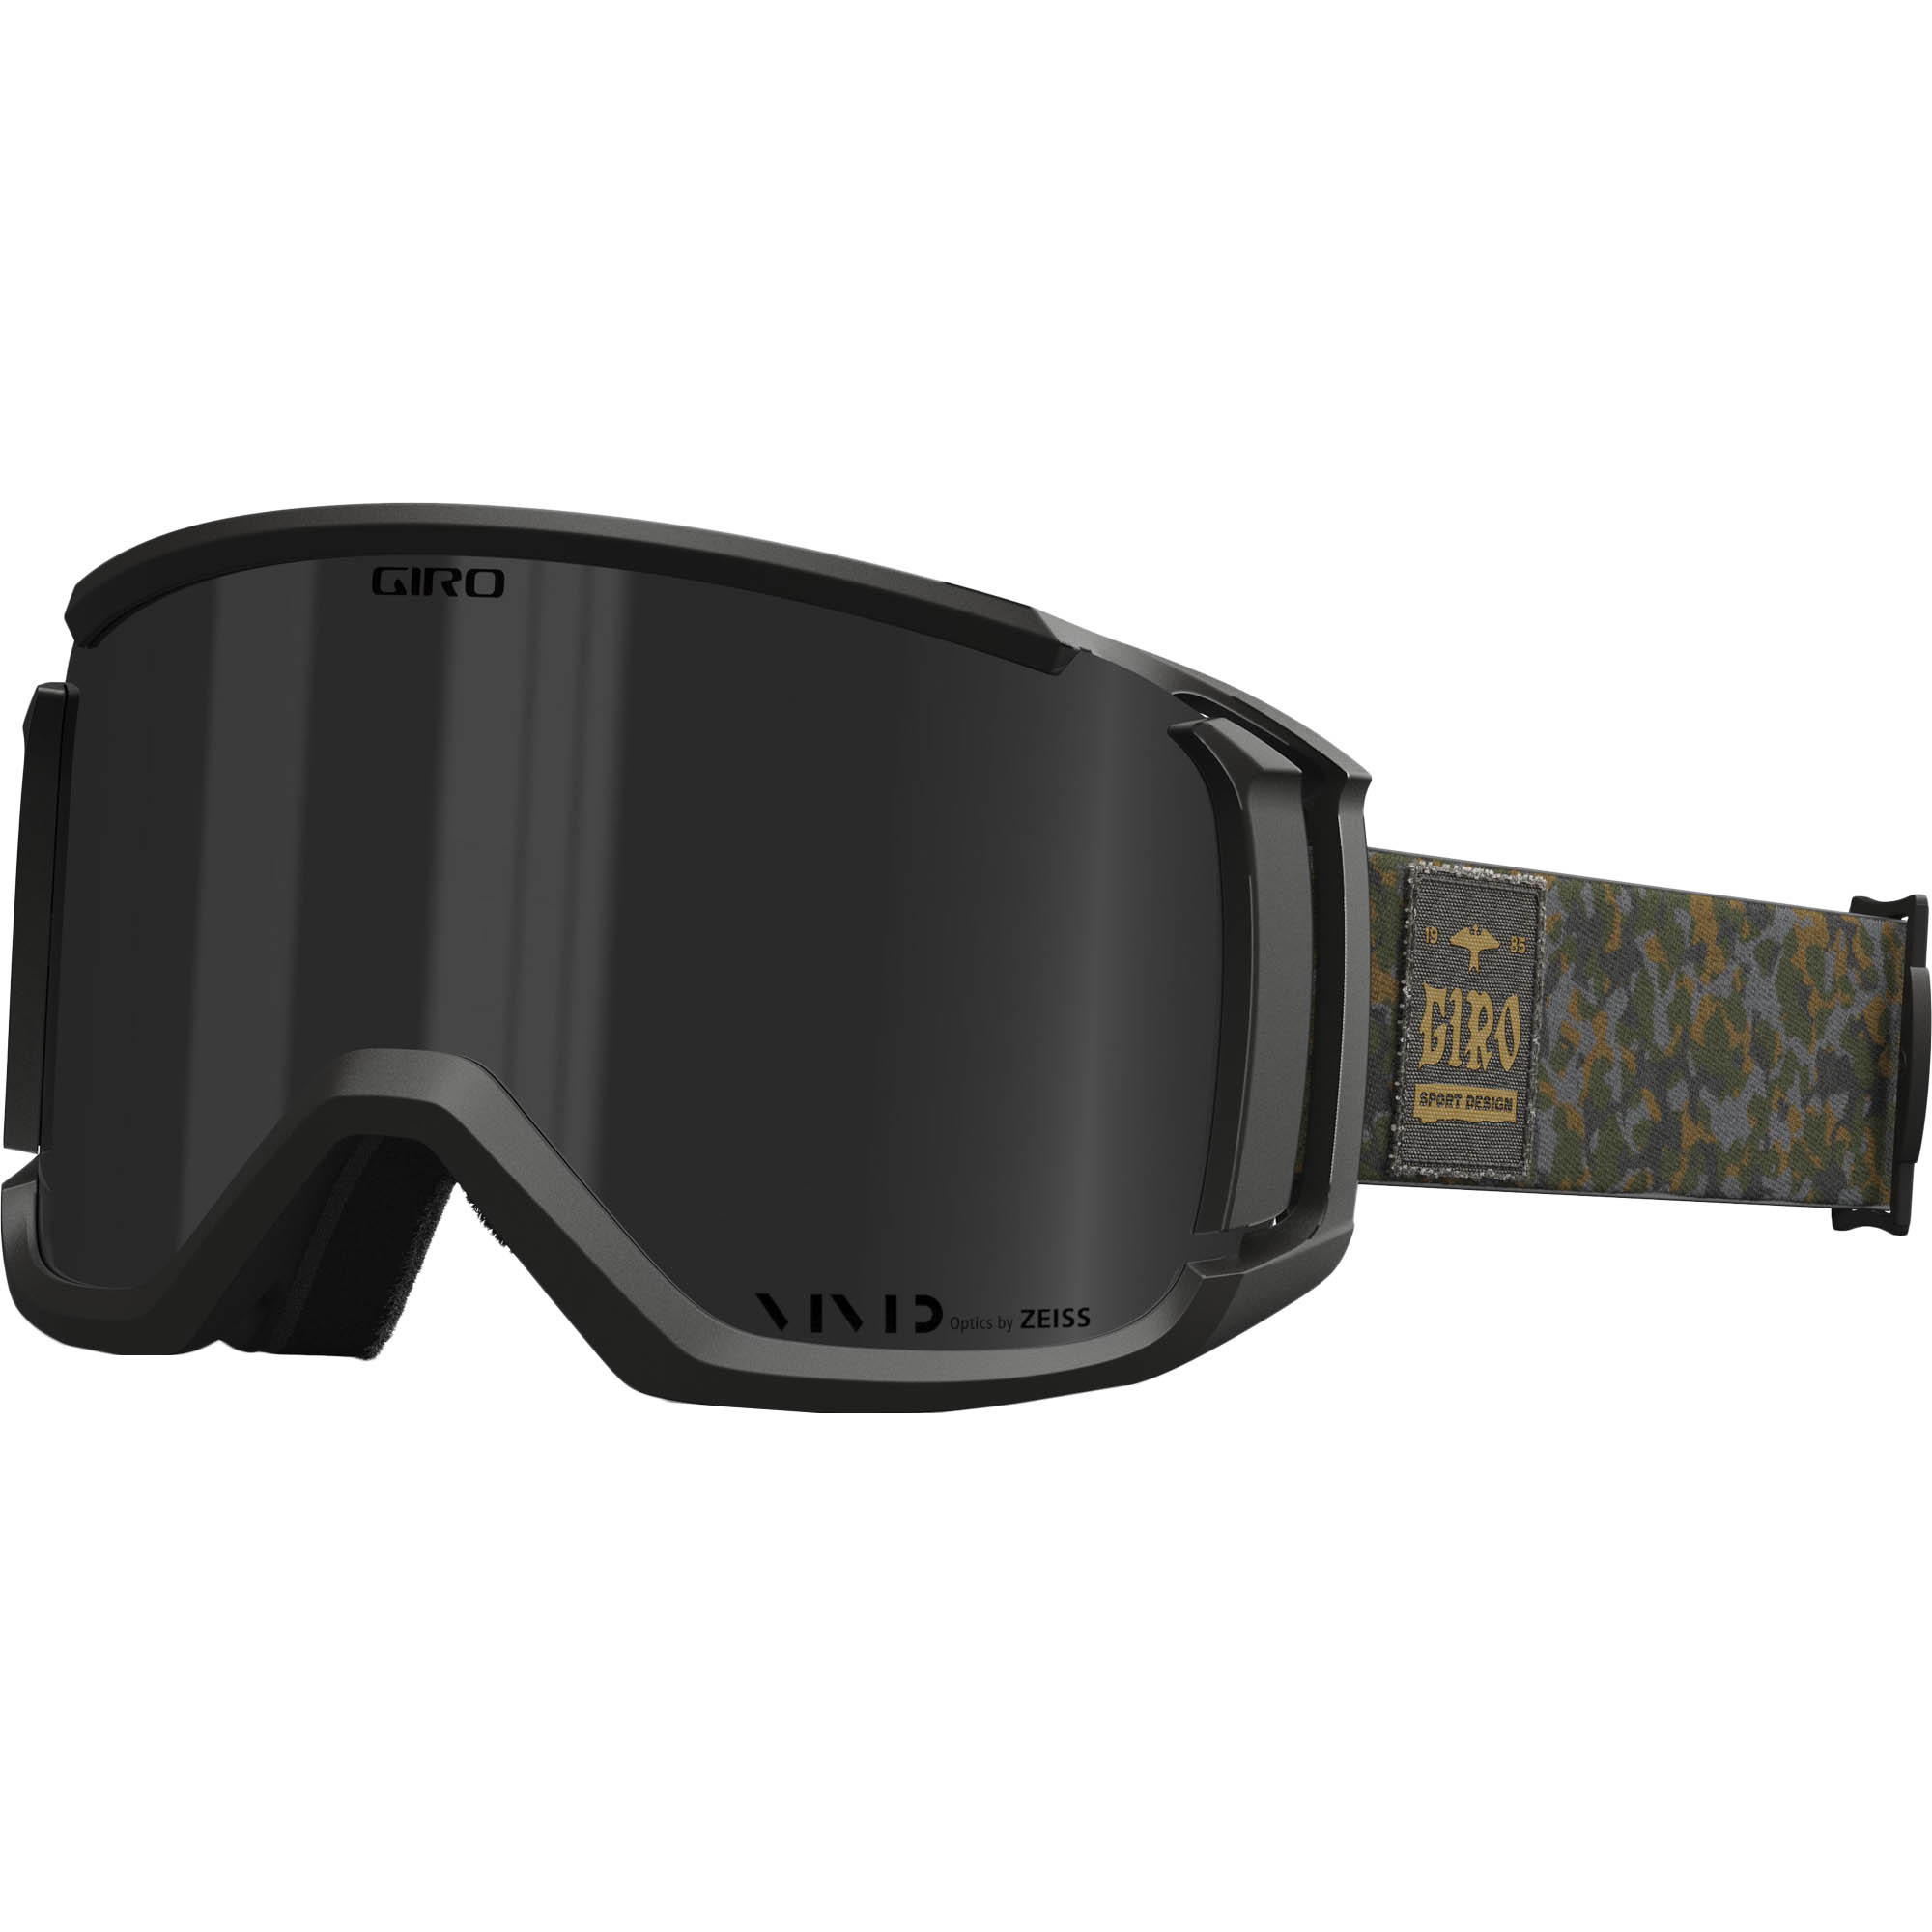 Giro Revolt Snowboard/Ski Goggles